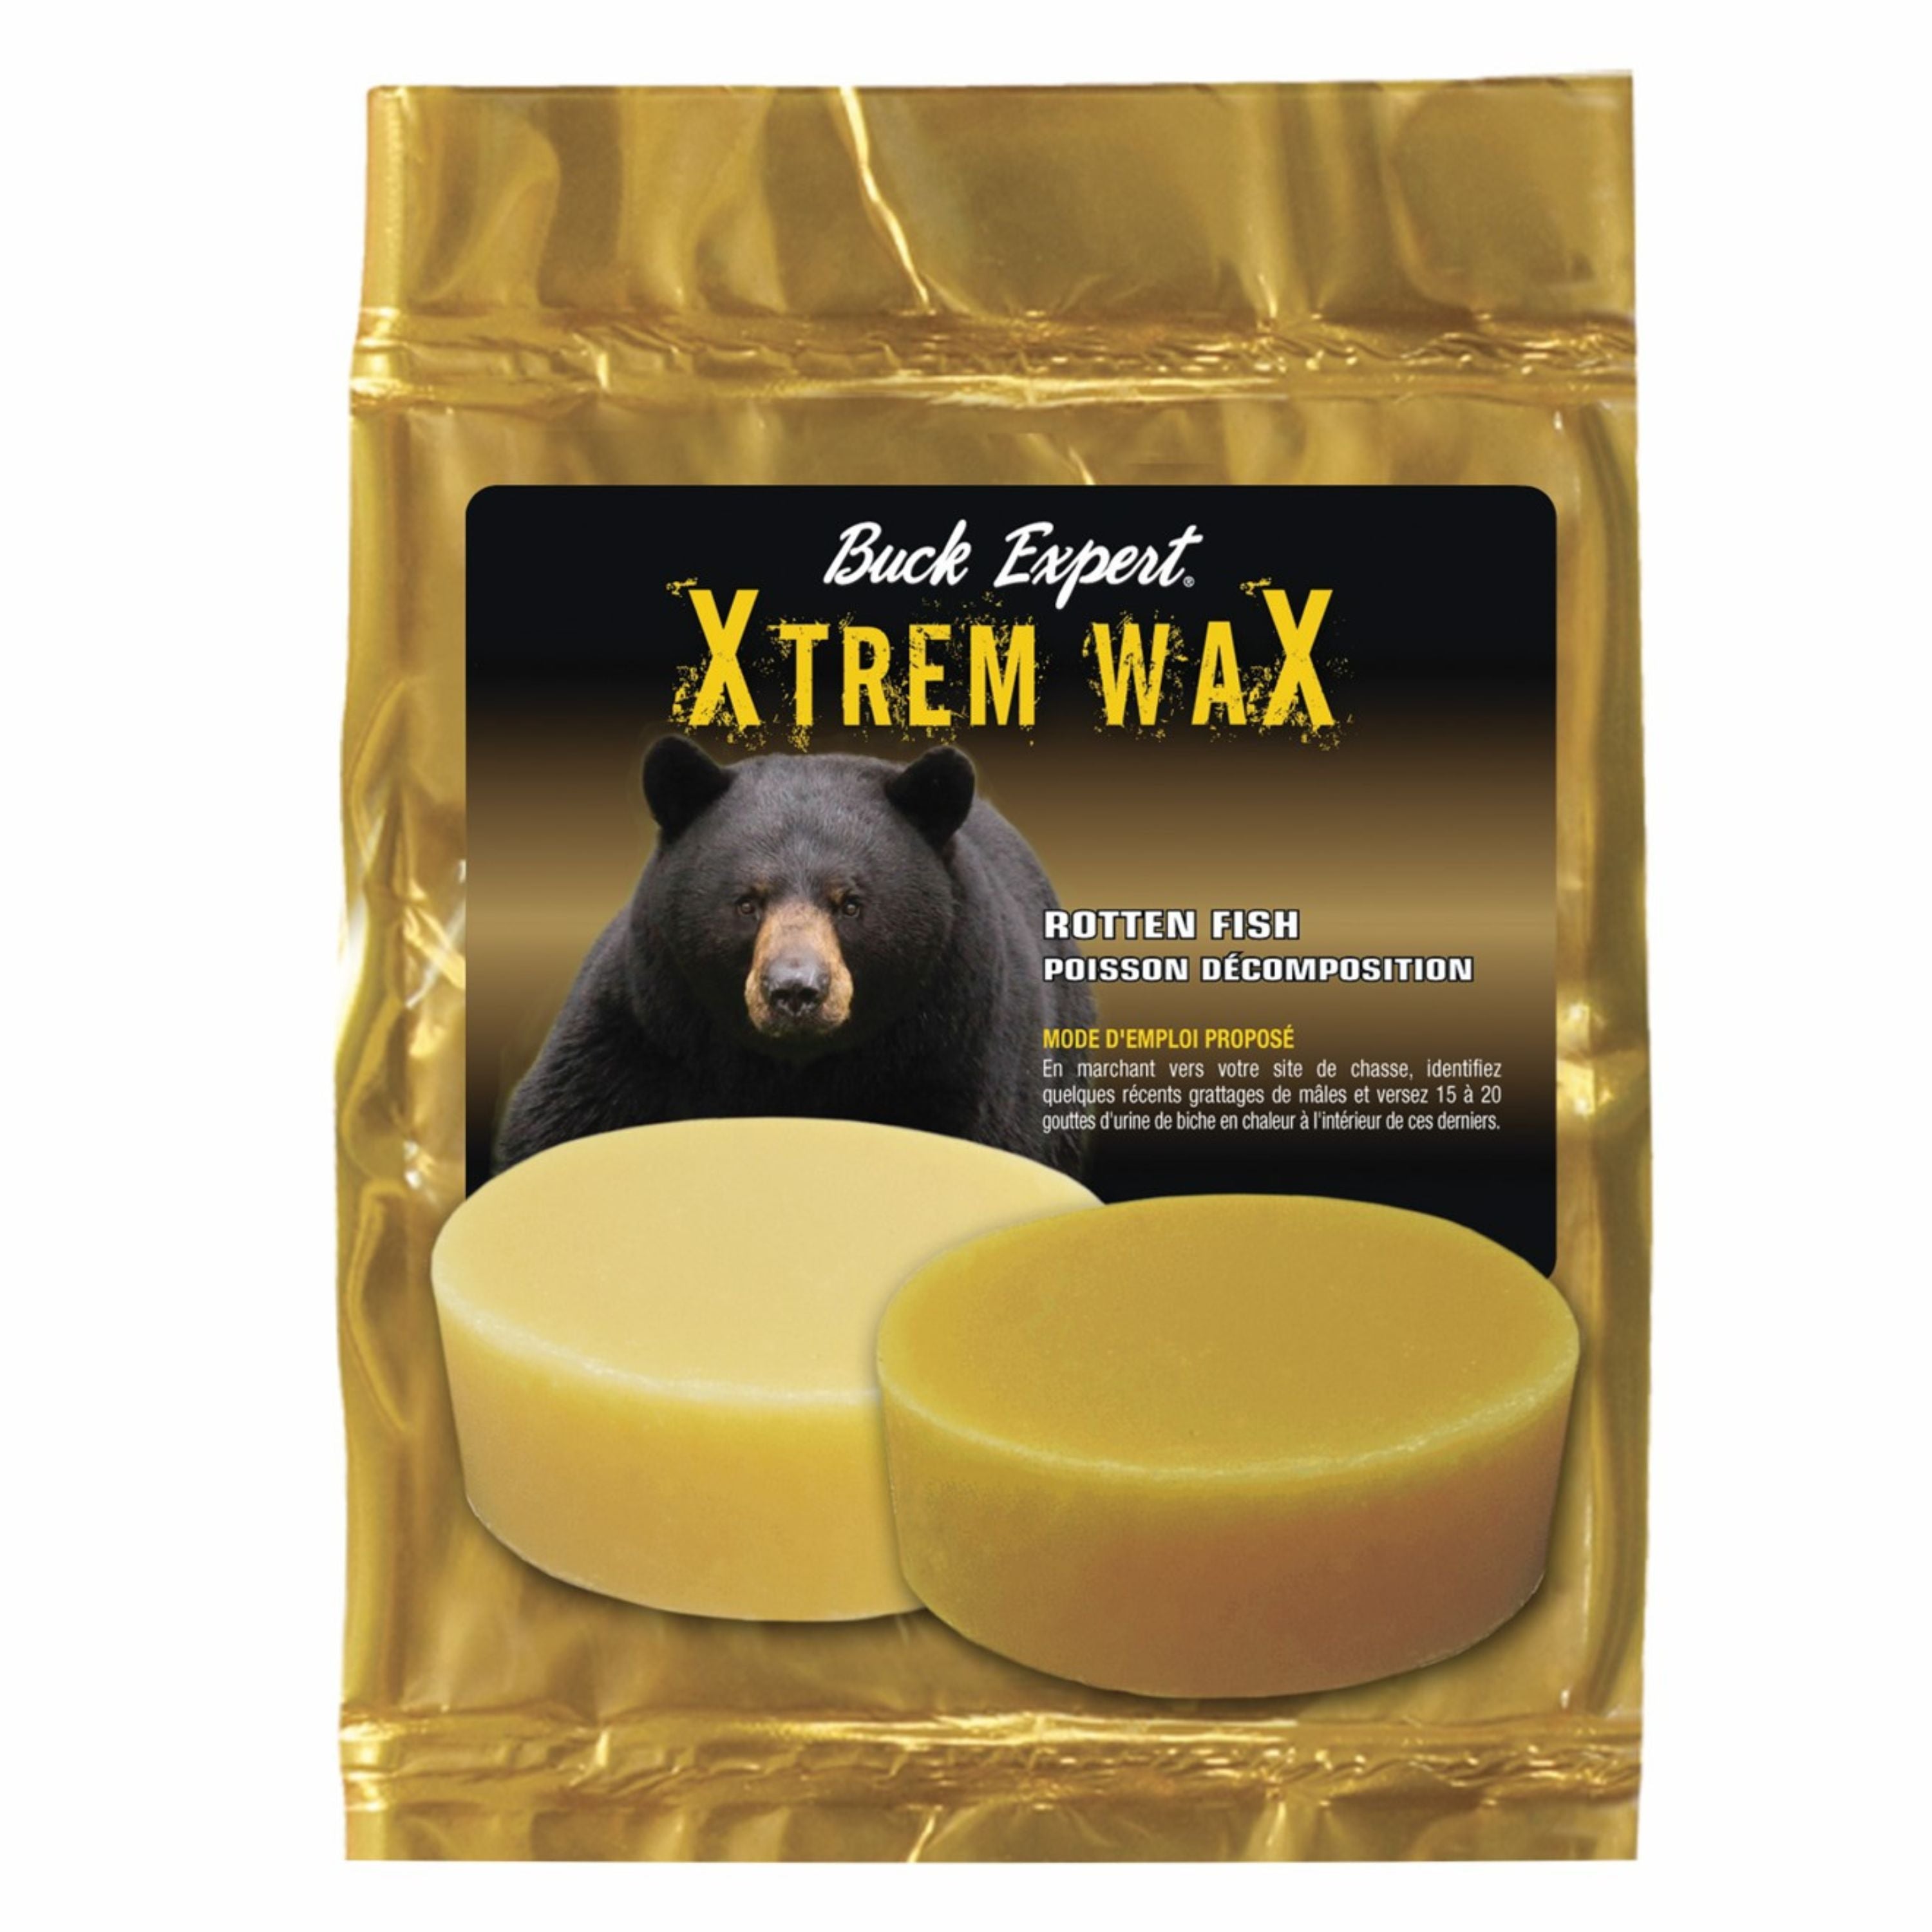 Cire "Xtrem Wax" odeur de poisson pour ours - 2 mcx